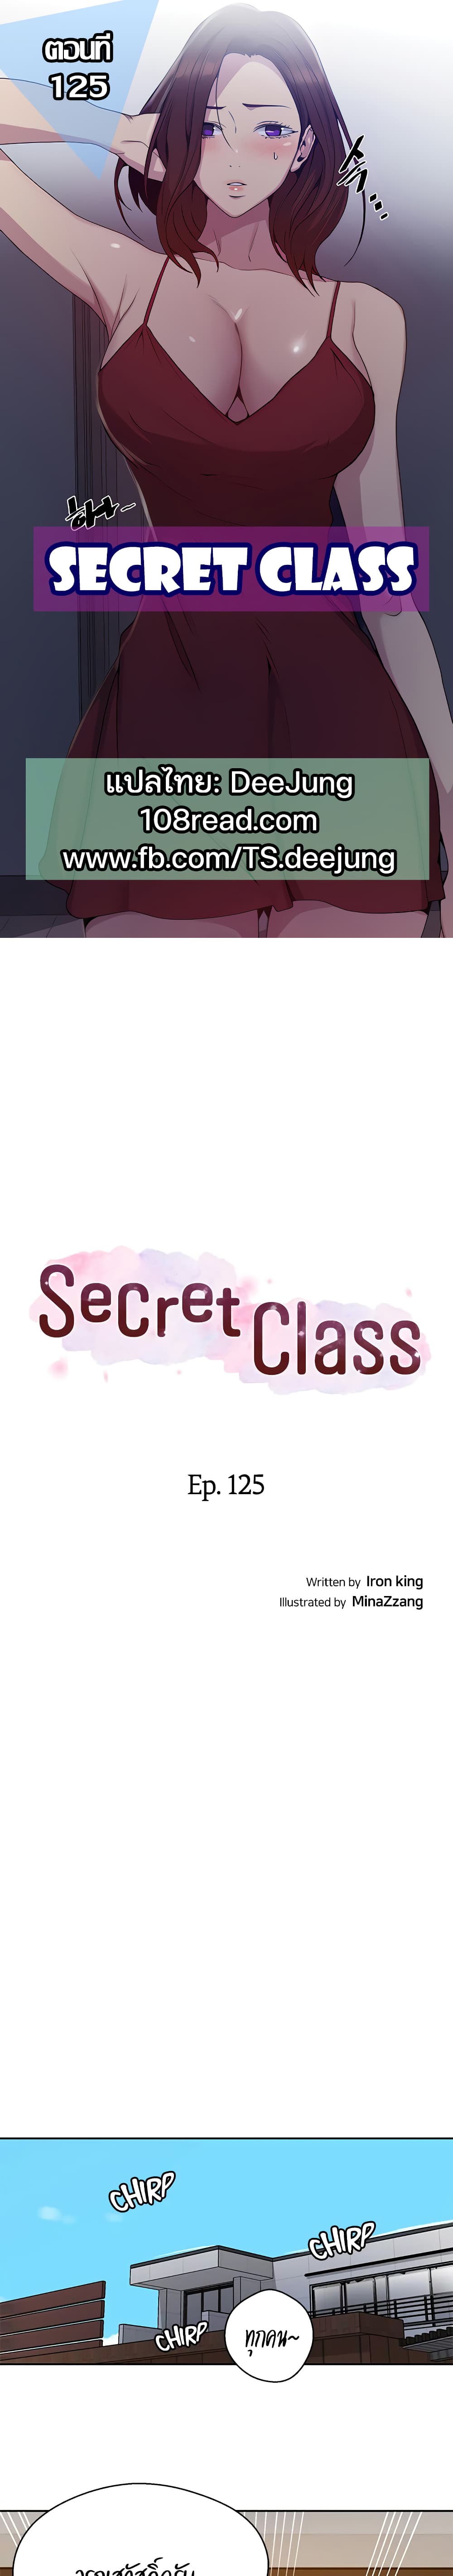 Secret Class 125 01